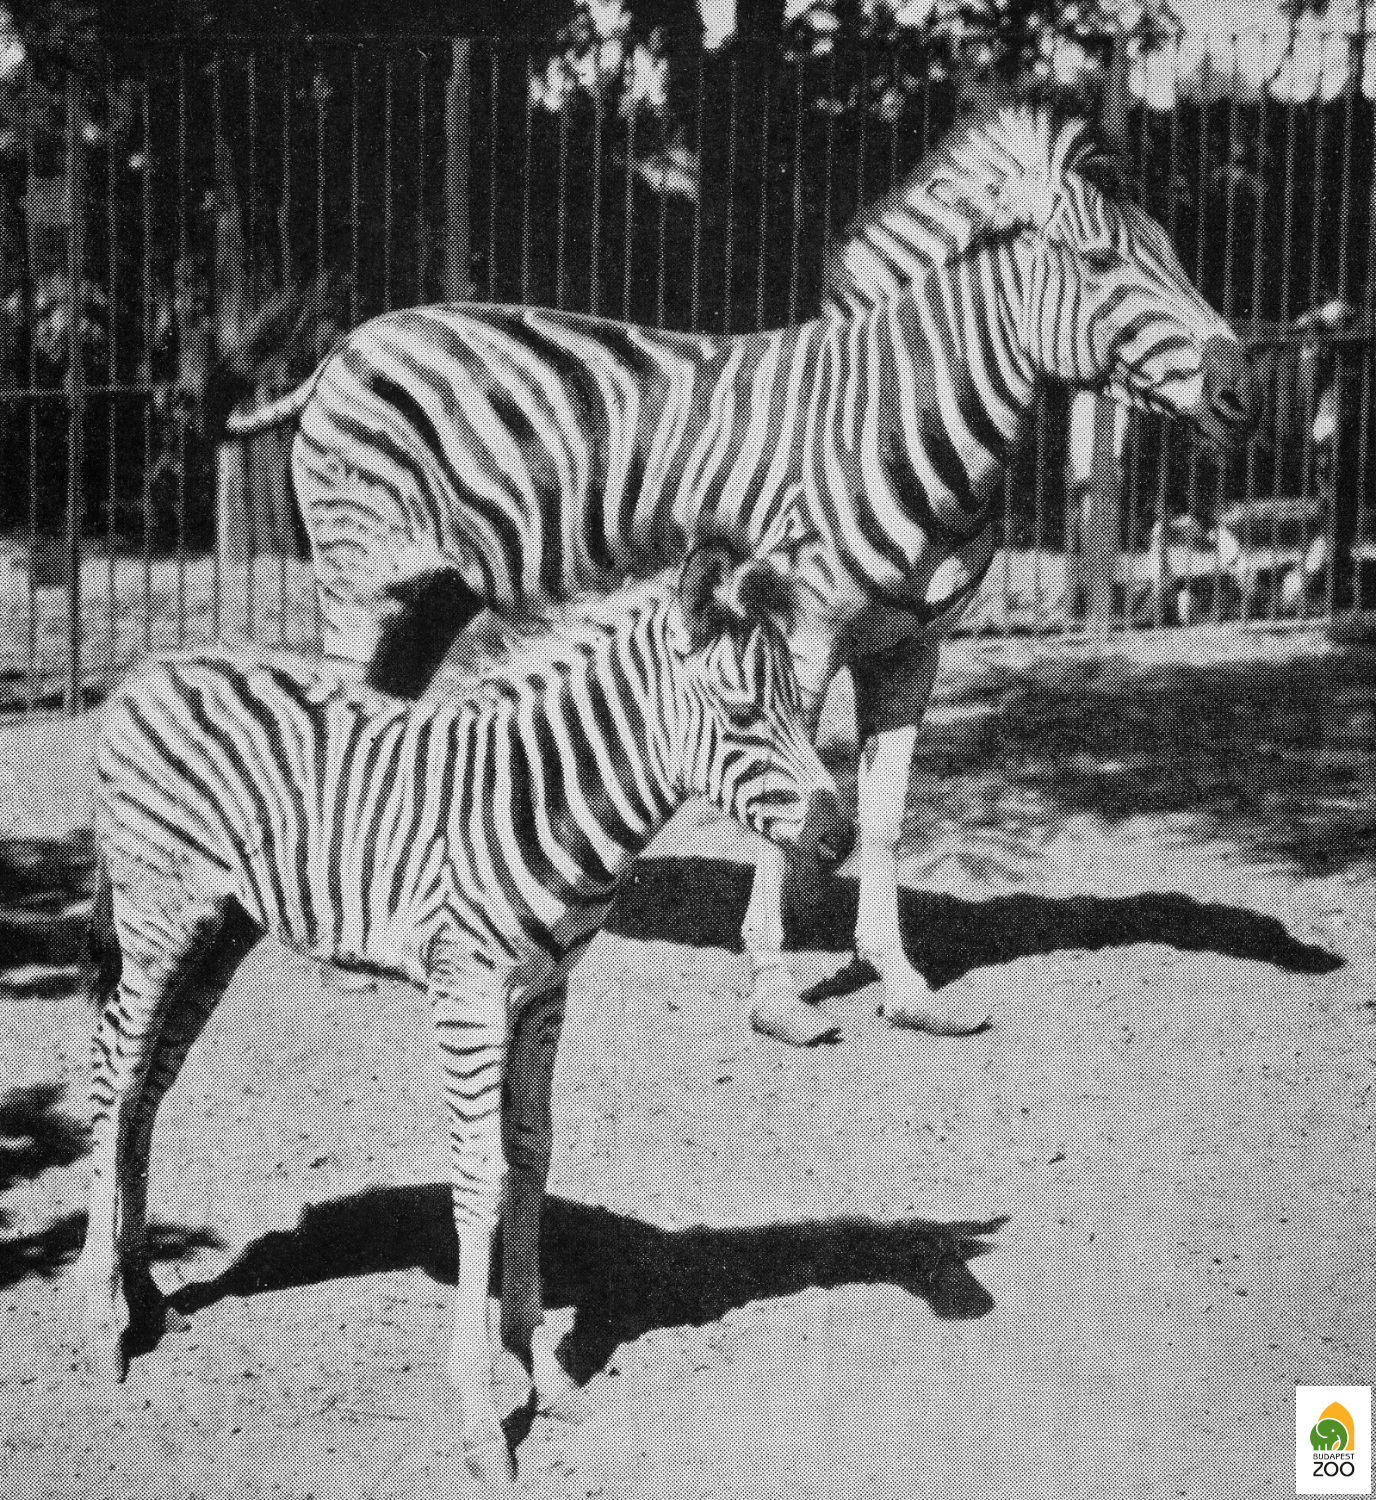 03 – Eszti első csikójával, az 1930. július 6-án világra jött Kicsivel, aki az első Magyarországon született zebra volt. Hölzel Gyula felvétele 